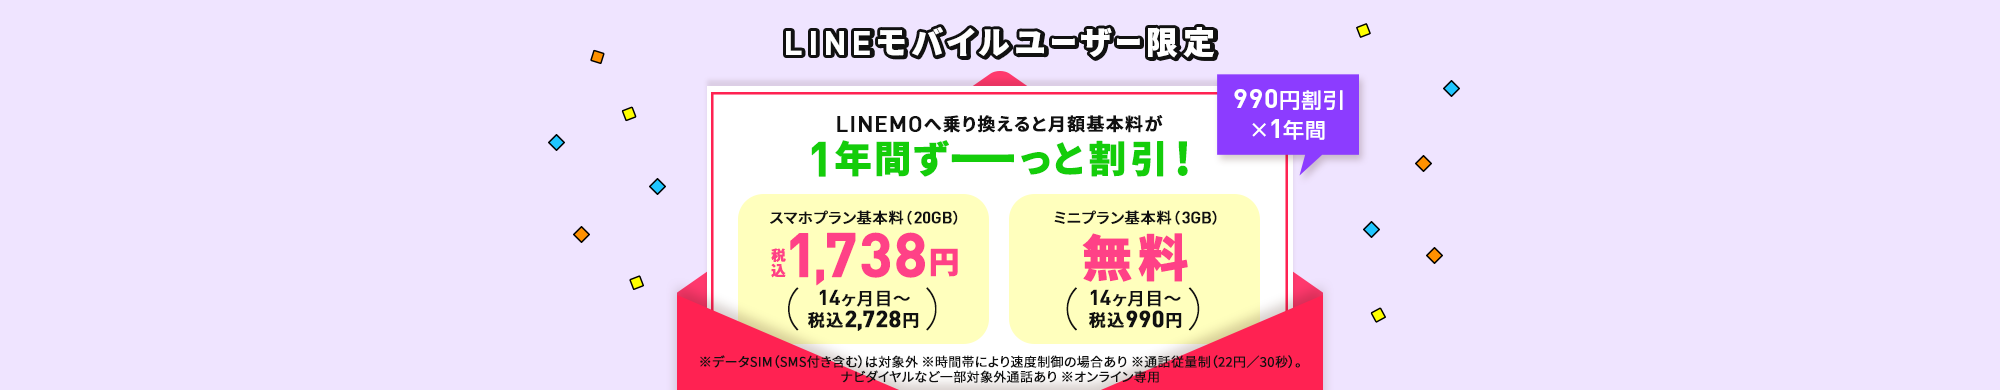 キャンペーン期間中に、LINEモバイル音声通話SIMをご利用の方が、LINEMOに乗り換えで契約で、毎月の基本料を最大13ヶ月間990円割り引きします。